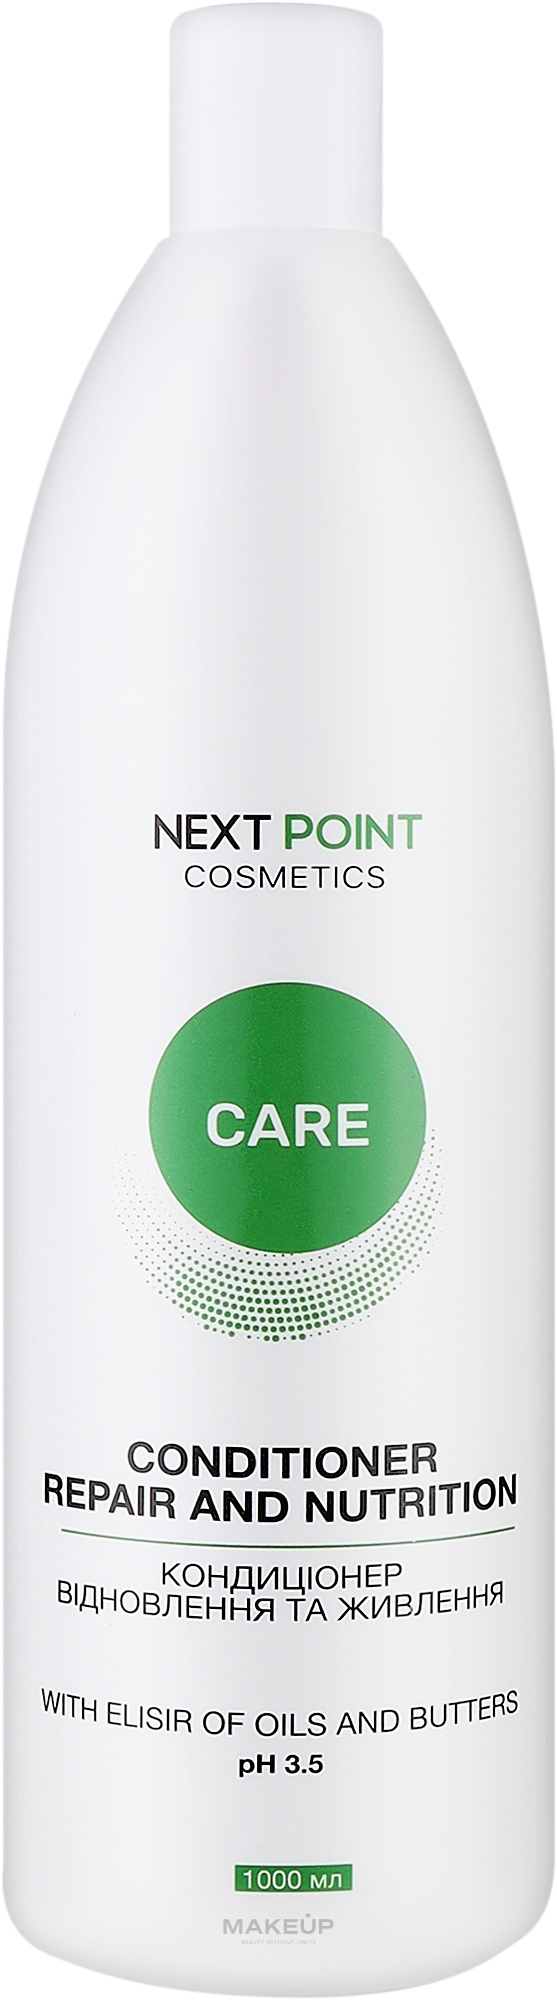 Кондиционер для волос "Восстановление и питание" - Nextpoint Cosmetics Repair and Nutrition Conditioner — фото 1000ml